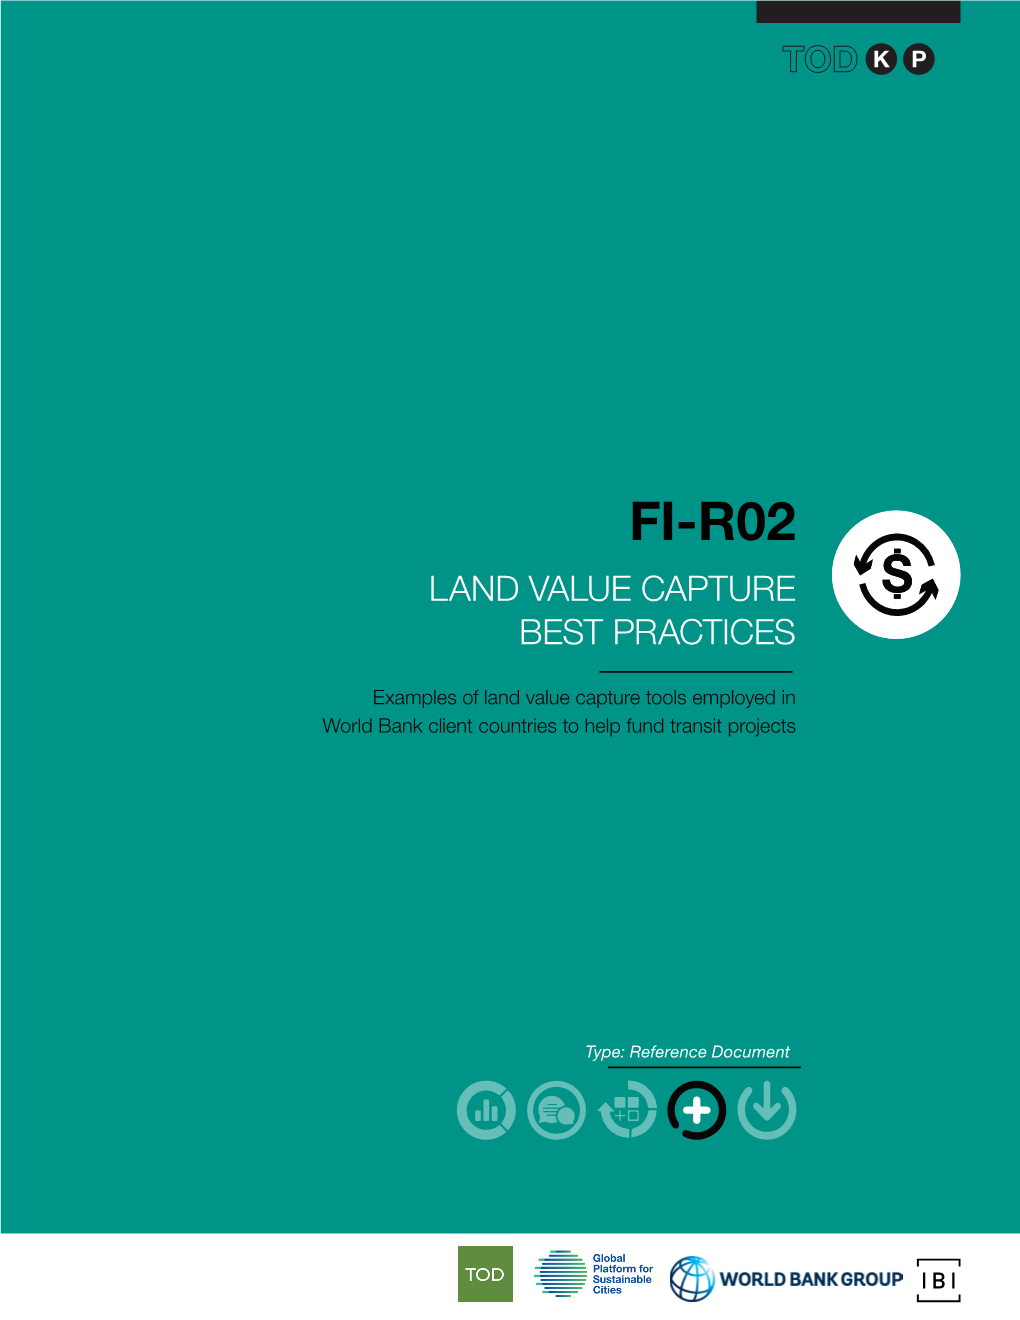 Fi-R02 Land Value Capture Best Practices